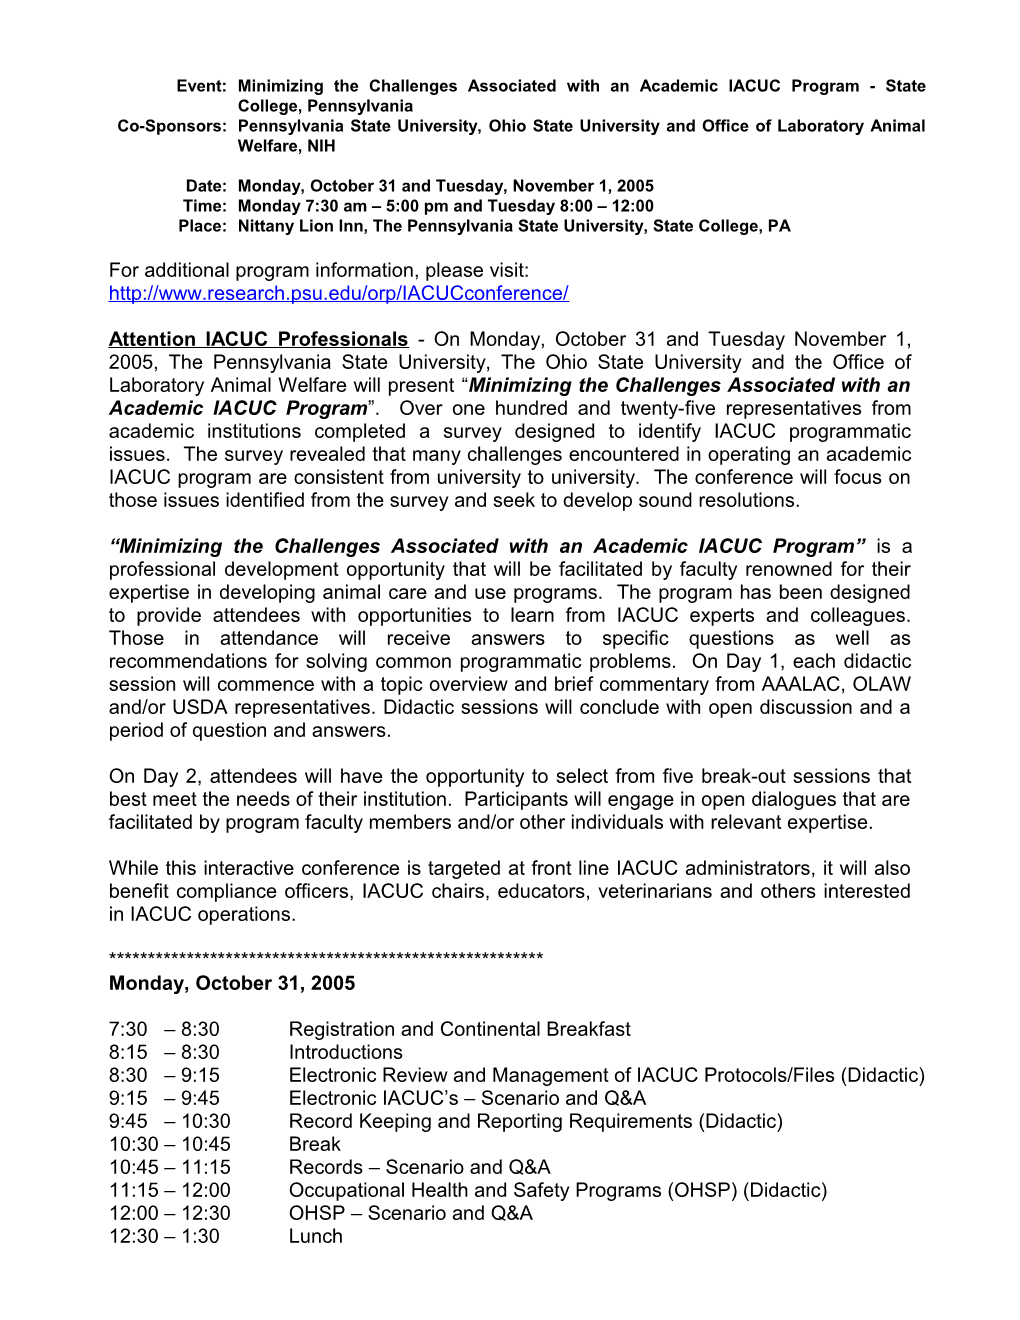 Penn State Registration for IACUC Program 08/18/2005